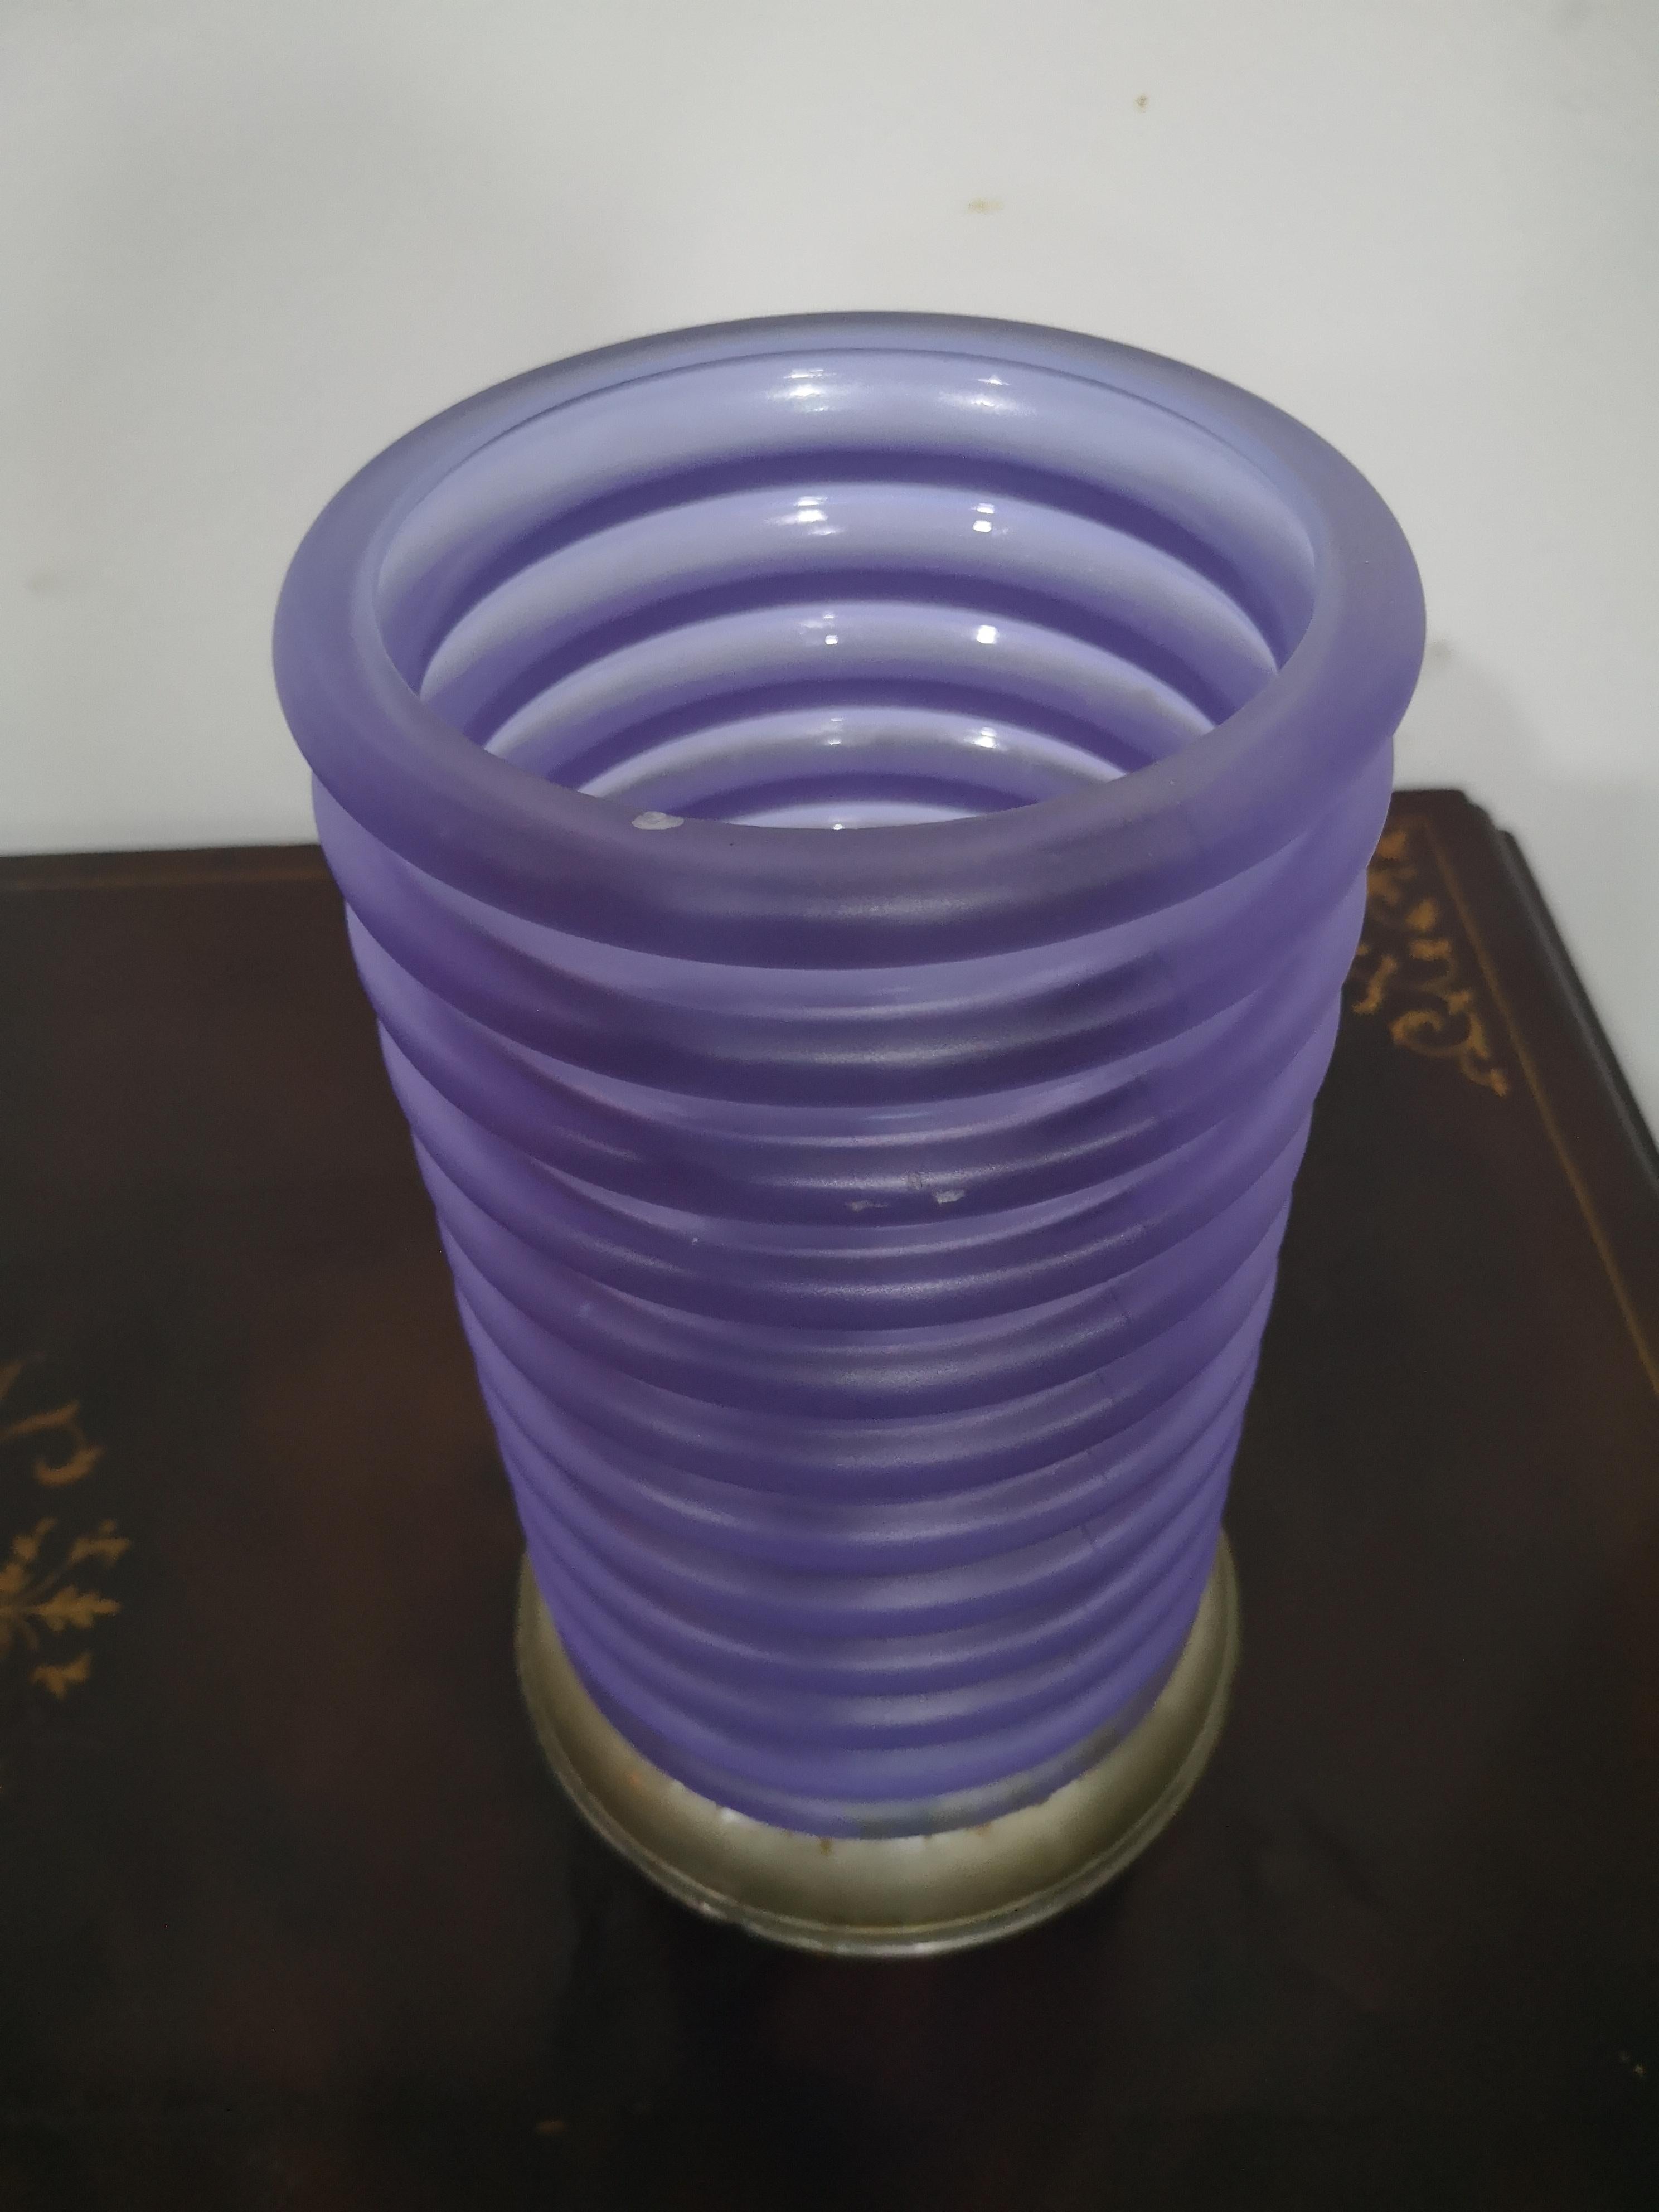 Schöne Onda-Vase, die dem Architekten Sergio Asti zugeschrieben wird. Die röhrenförmige Vase hat eine Reihe von Rillen in Form von Wellen, daher der Name Wave